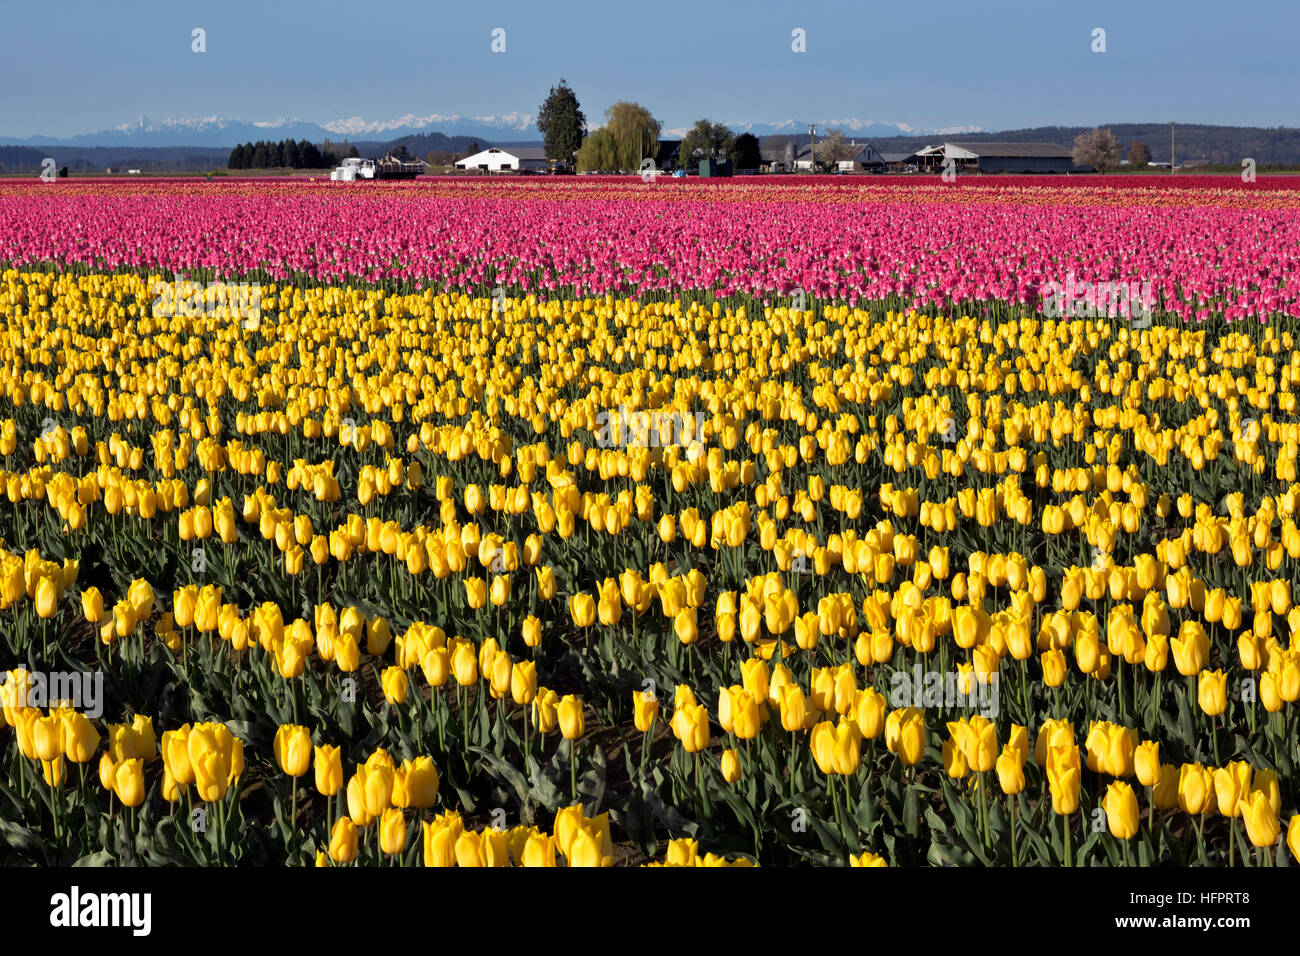 WASHINGTON - Jaune,orange,rose et de tulipes rouges croissant dans une ampoule commerciales champ dans le Delta de la rivière Skagit, près de Mount Vernon. Banque D'Images